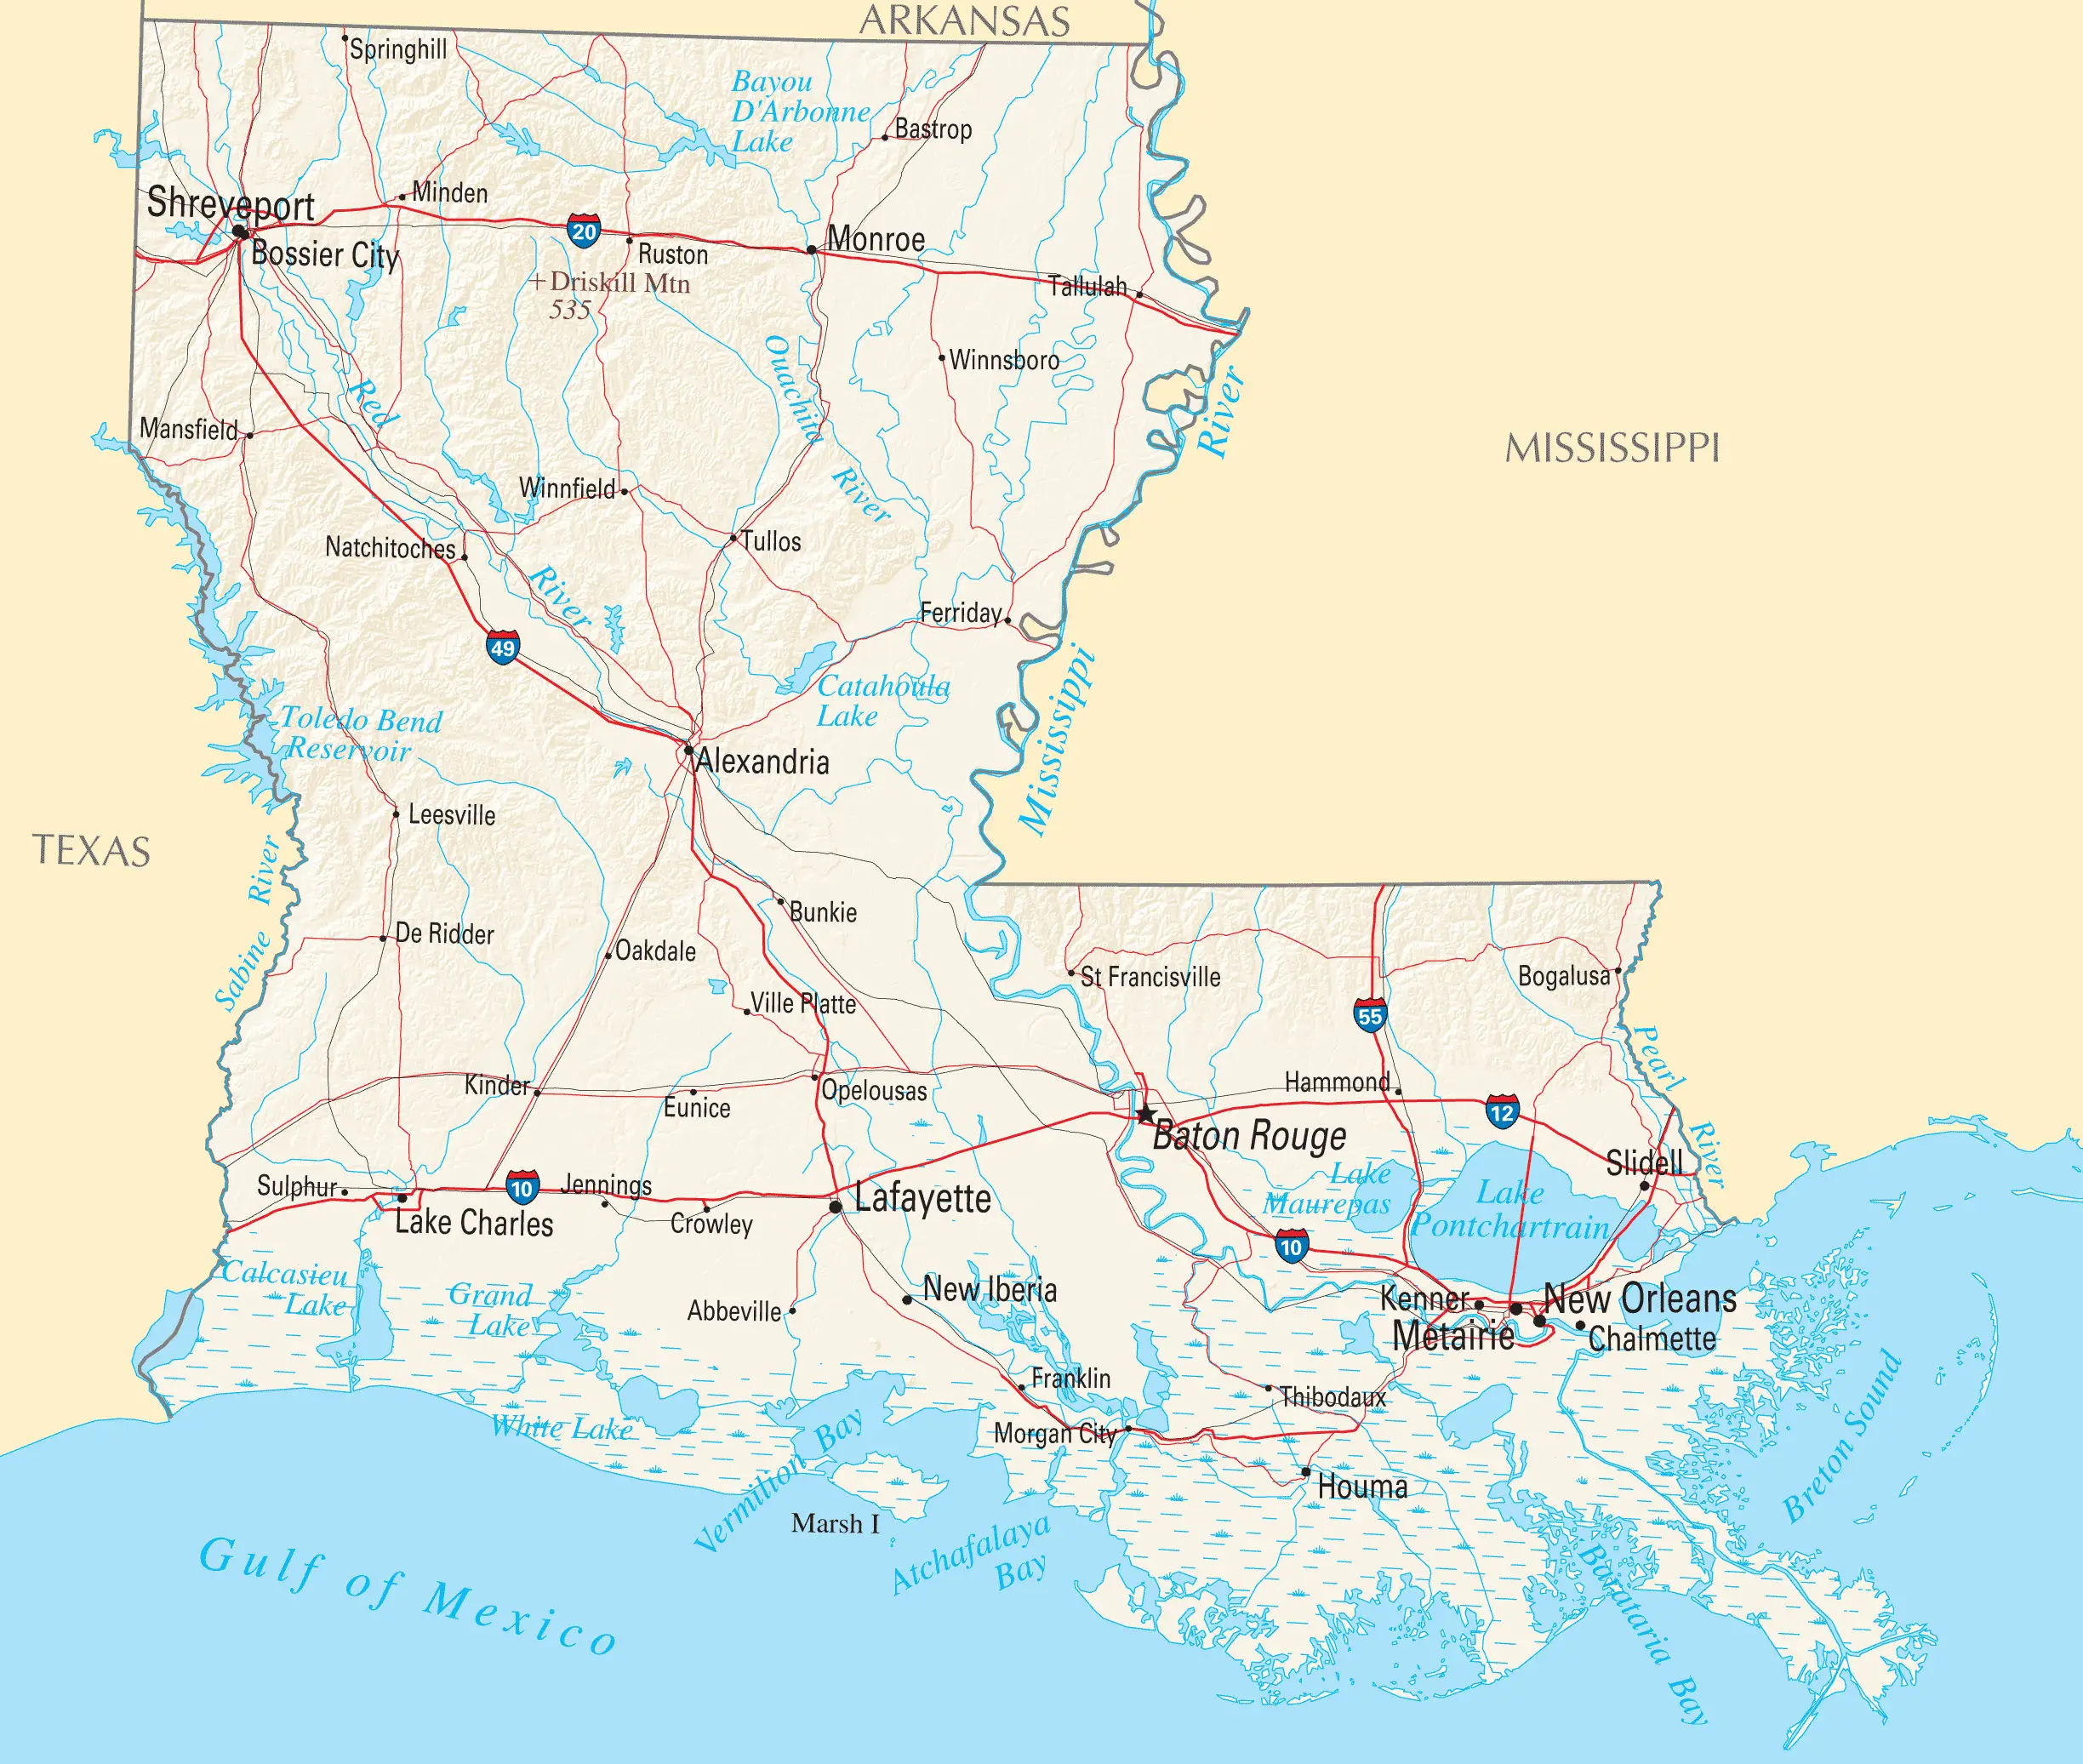 Louisiana Reference Map - MapSof.net